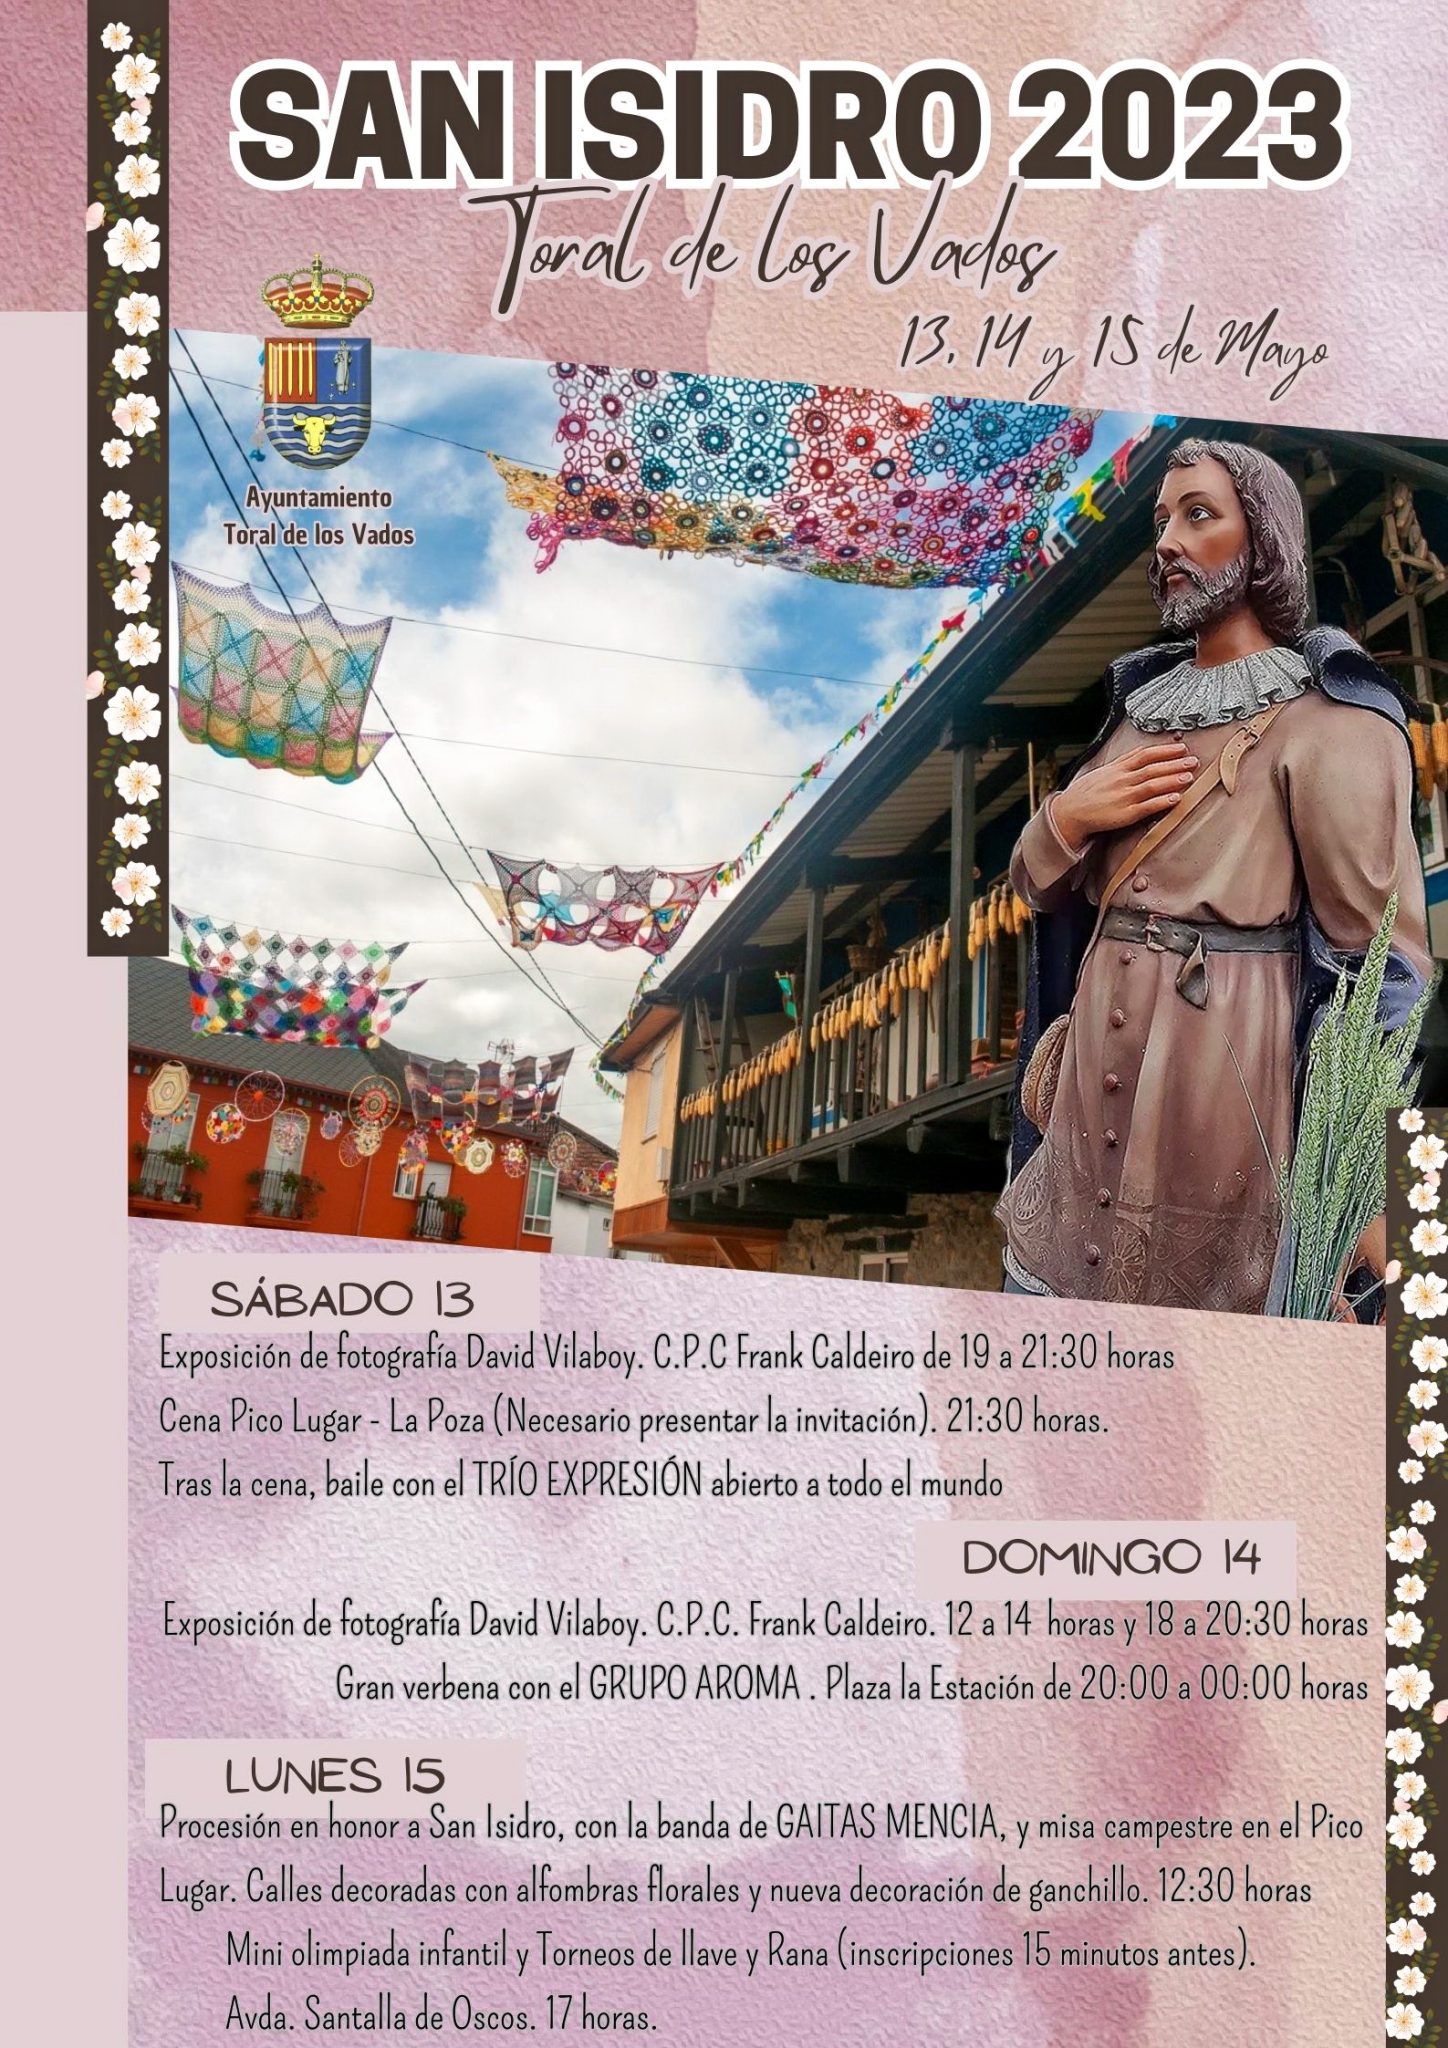 Toral de los Vados celebra San Isidro los días 13, 14 y 15 de mayo. Consulta la programación que han preparado 2